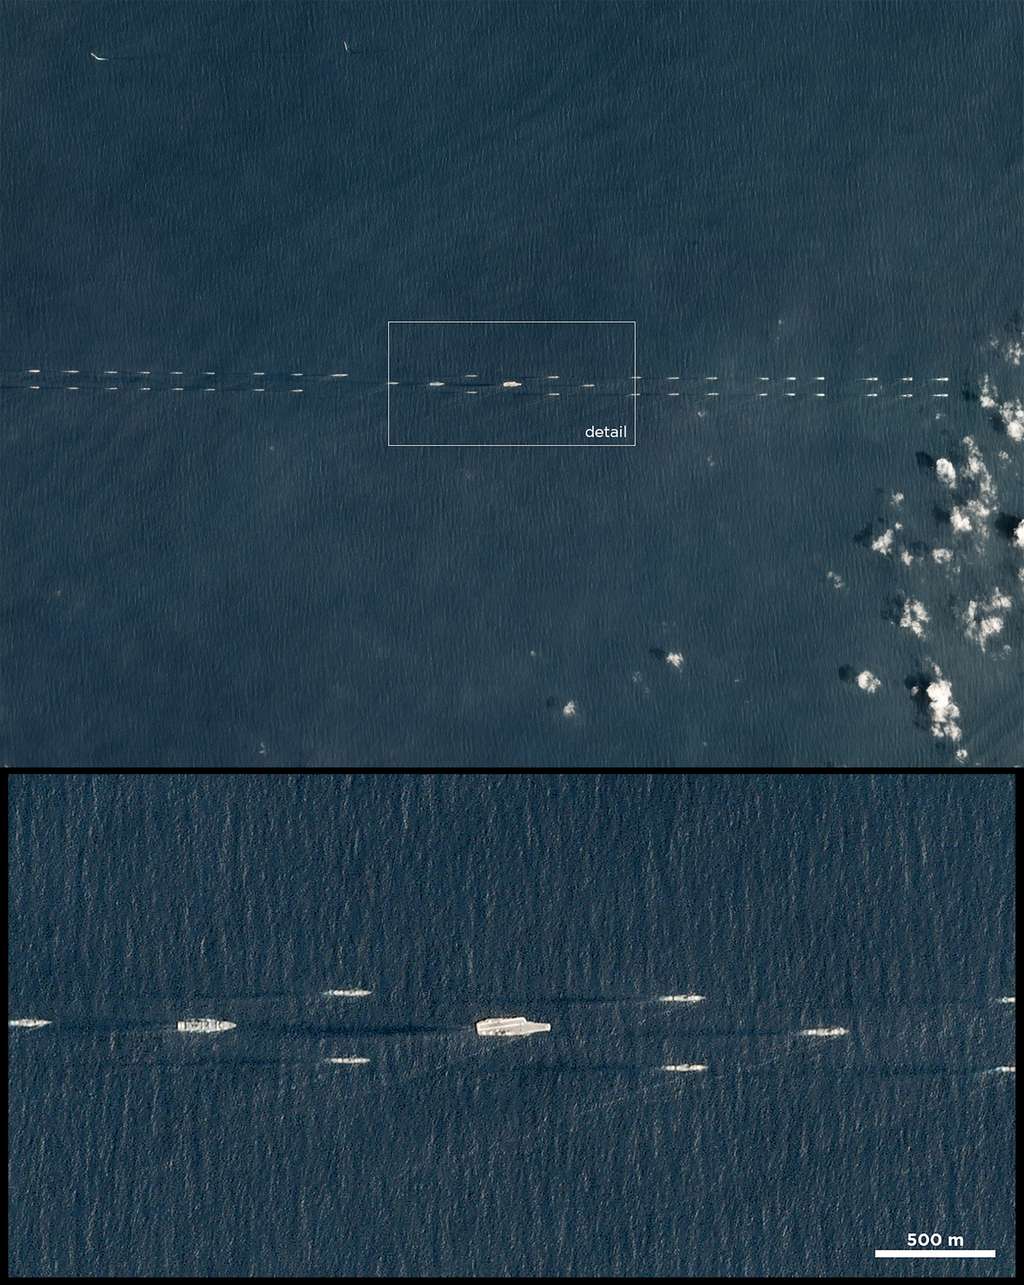 Exercices militaires chinois avec une flotte de navires escortant un porte-avions. © 2018 Planet Labs, Inc.